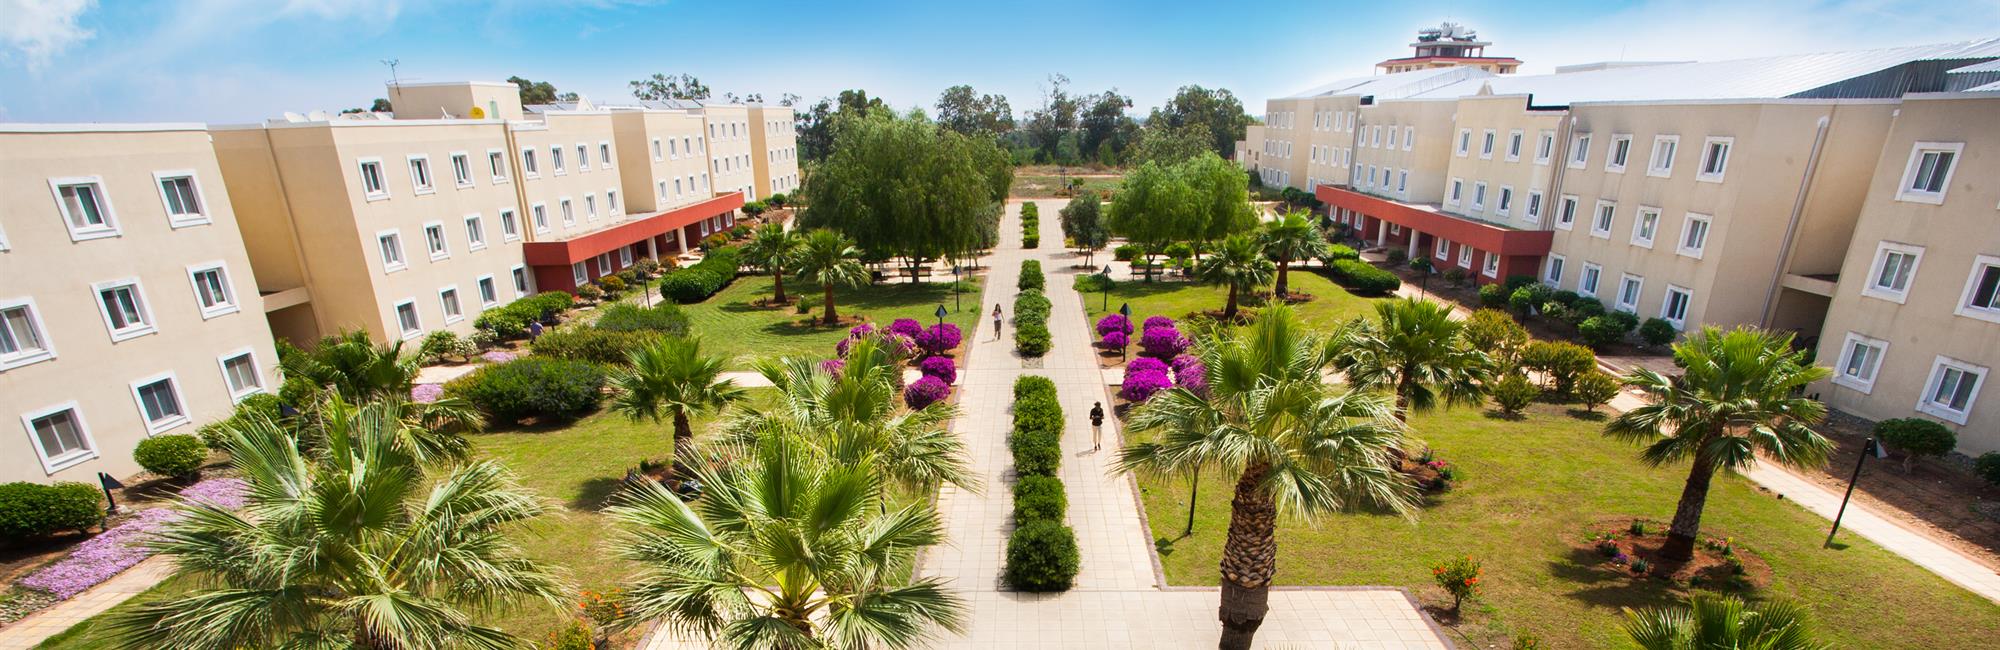 جامعة شرق البحر المتوسط